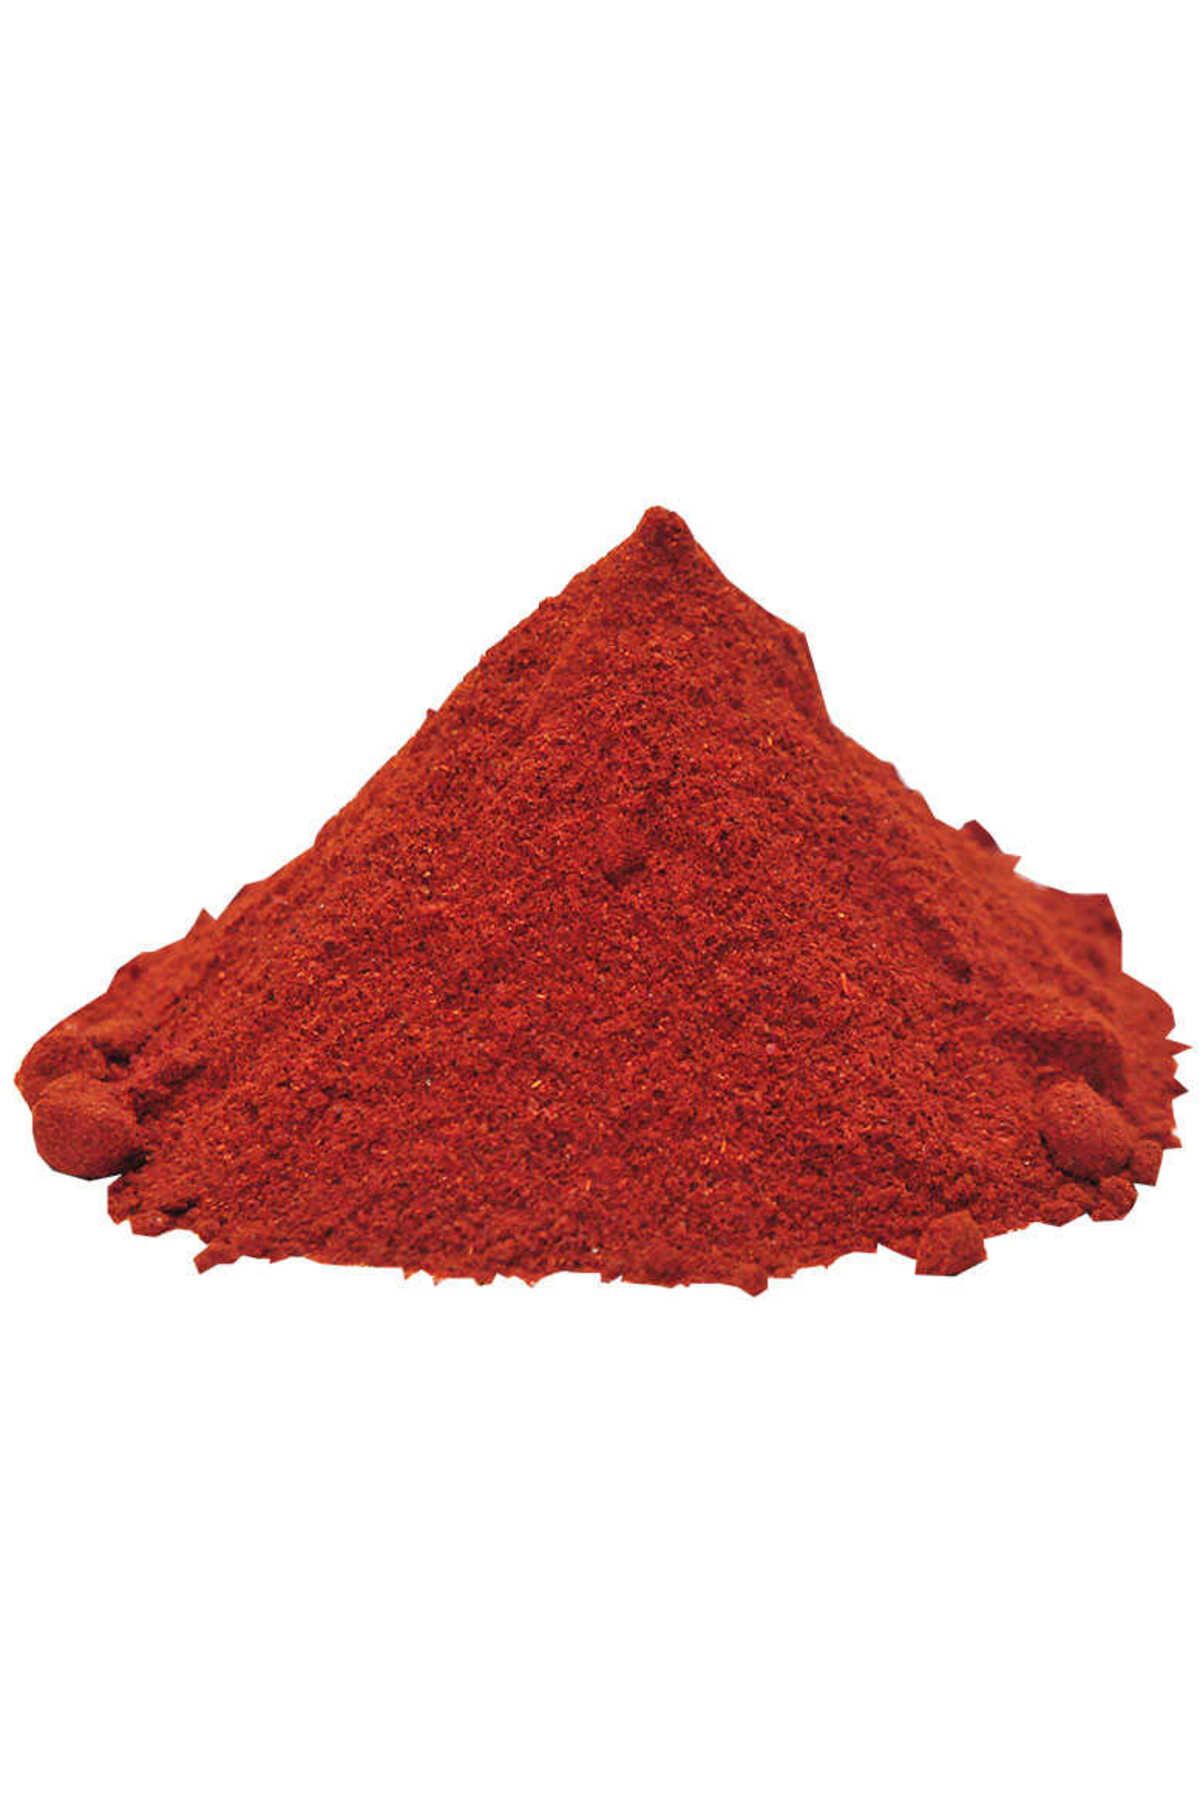 Genel Markalar Adipa Bx Kırmızı Toz Biber Acılı Renk Biberi 50 Gr Paket